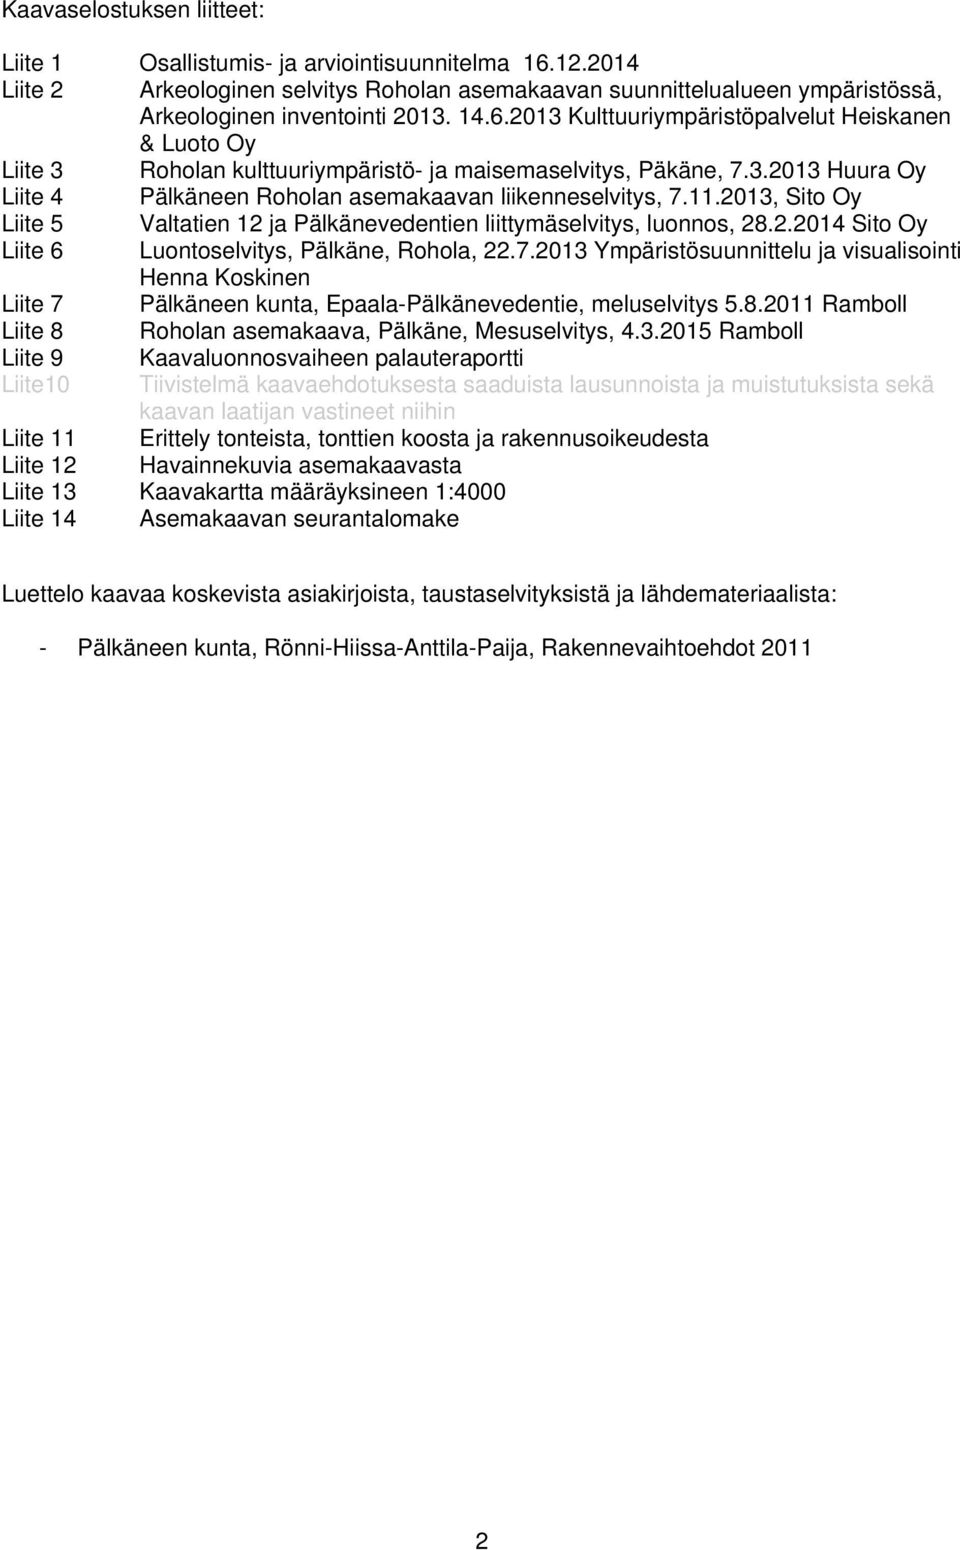 2013, Sito Oy Liite 5 Valtatien 12 ja Pälkänevedentien liittymäselvitys, luonnos, 28.2.2014 Sito Oy Liite 6 Luontoselvitys, Pälkäne, Rohola, 22.7.